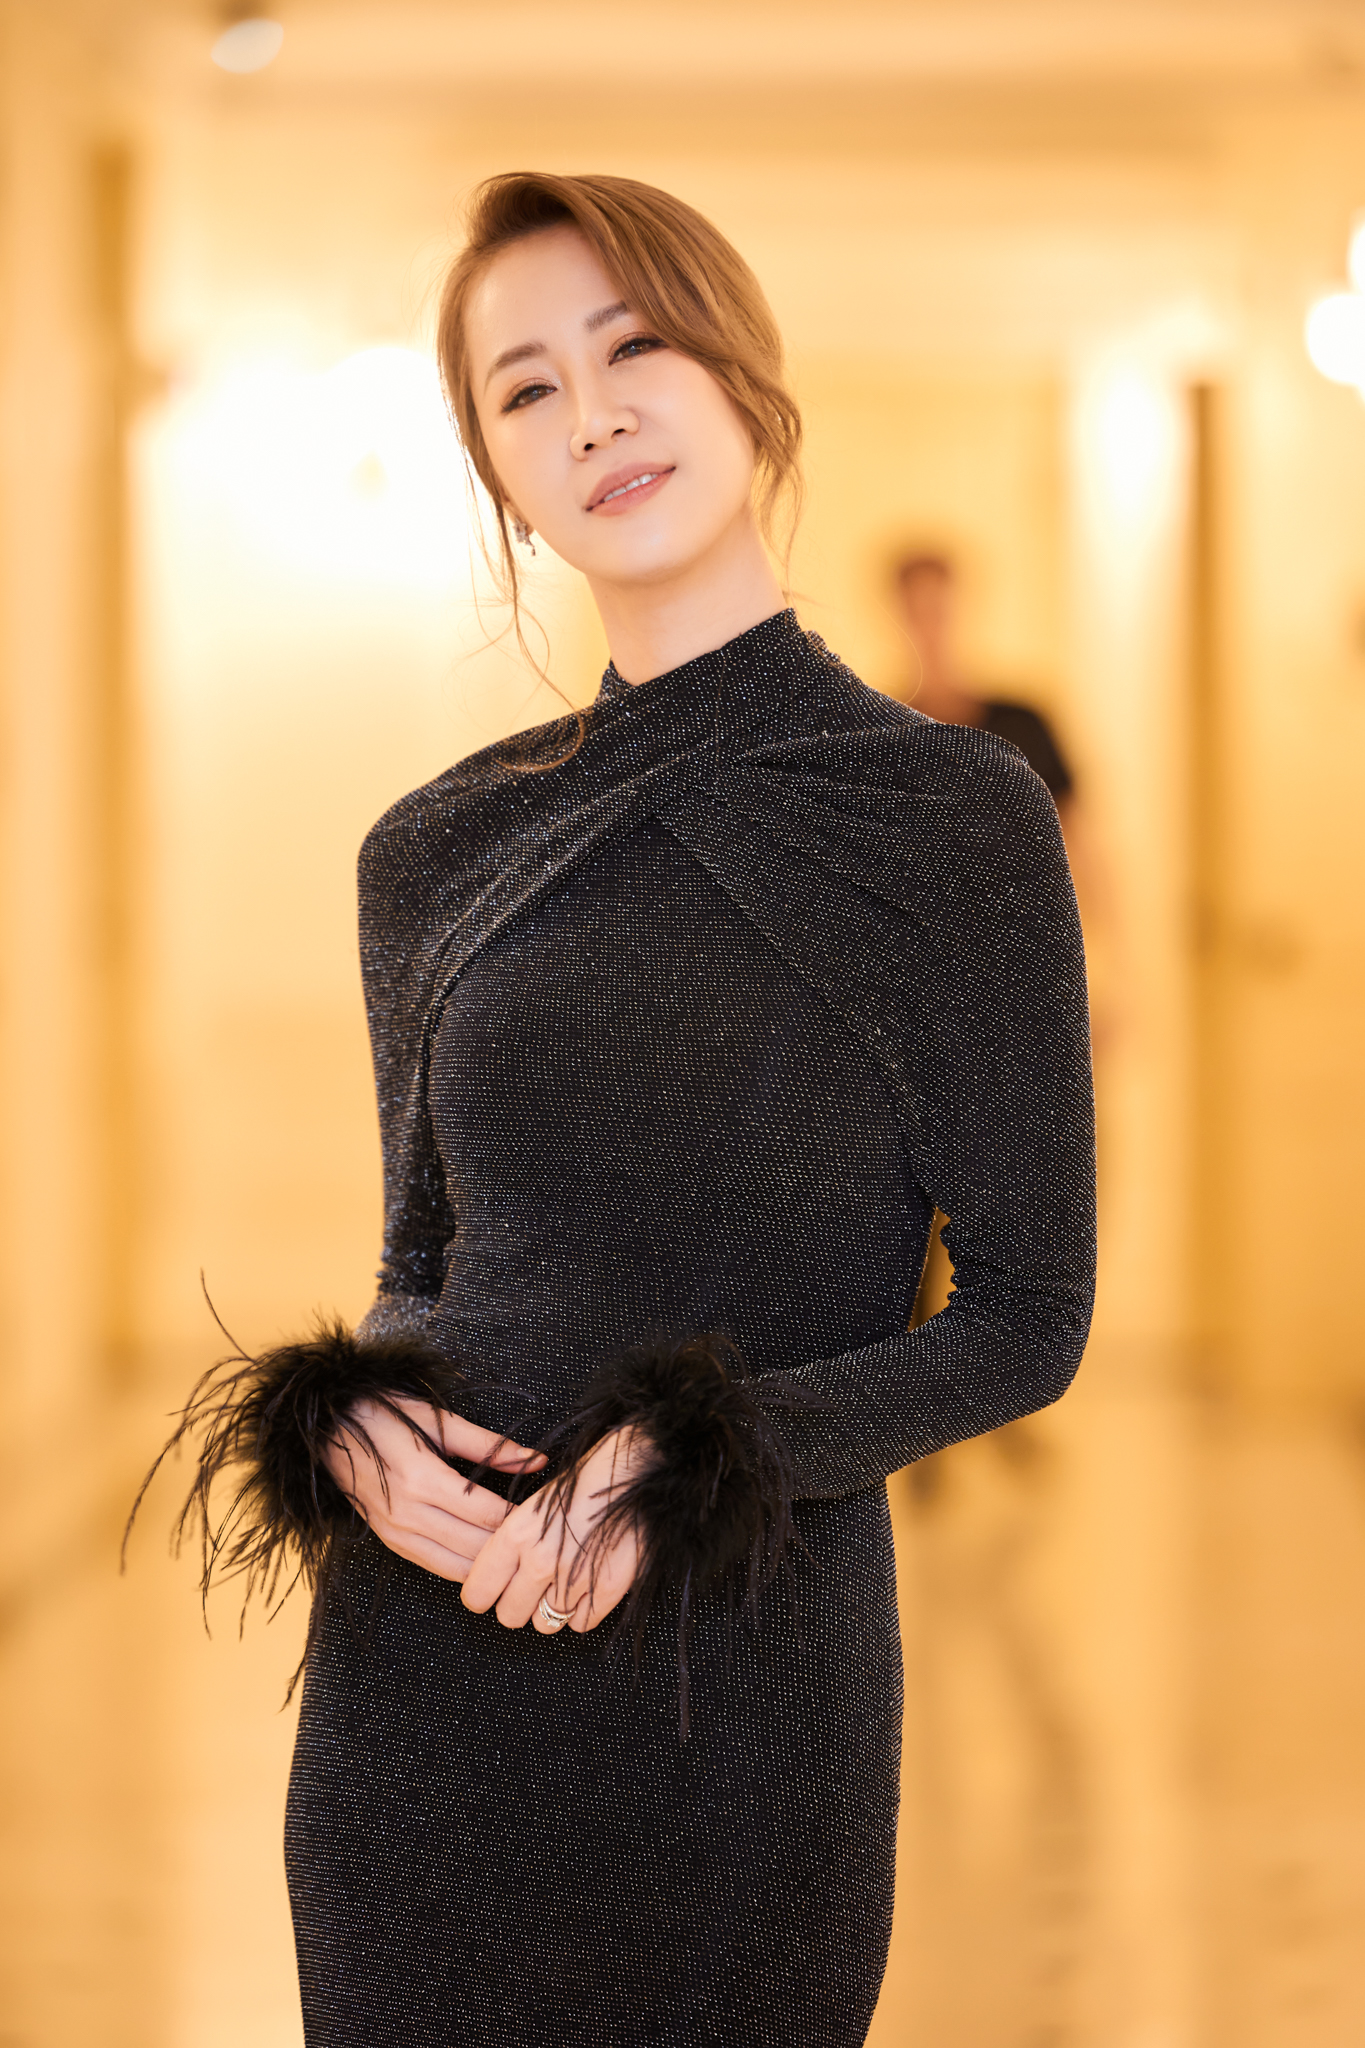 Hoa hậu Dương Thùy Linh xinh đẹp rạng rỡ ở tuổi 38  - Ảnh 3.